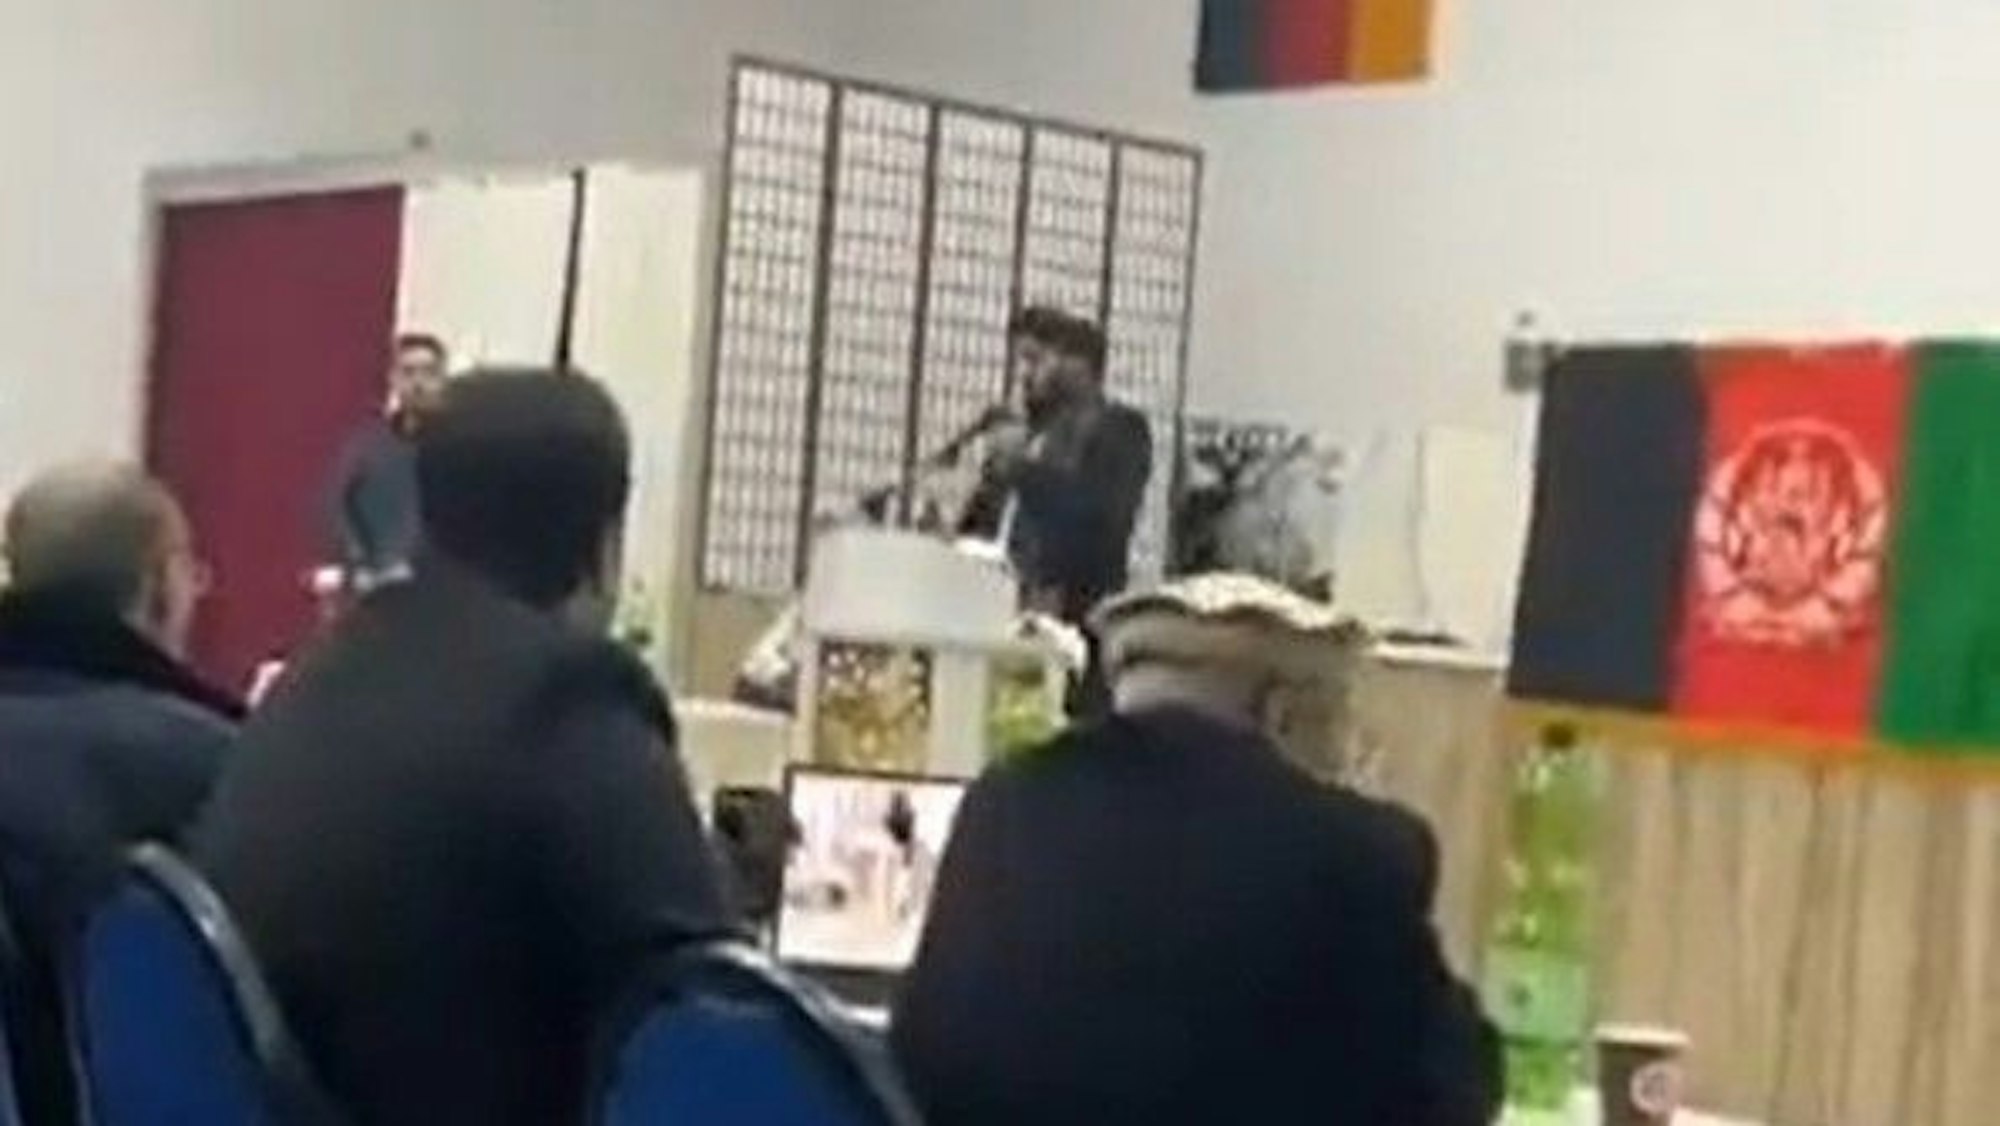 Ein hoher Taliban-Funktionär sprach bei einer Veranstaltung in Räumen der DITIB-Moschee in Köln-Chorweiler.